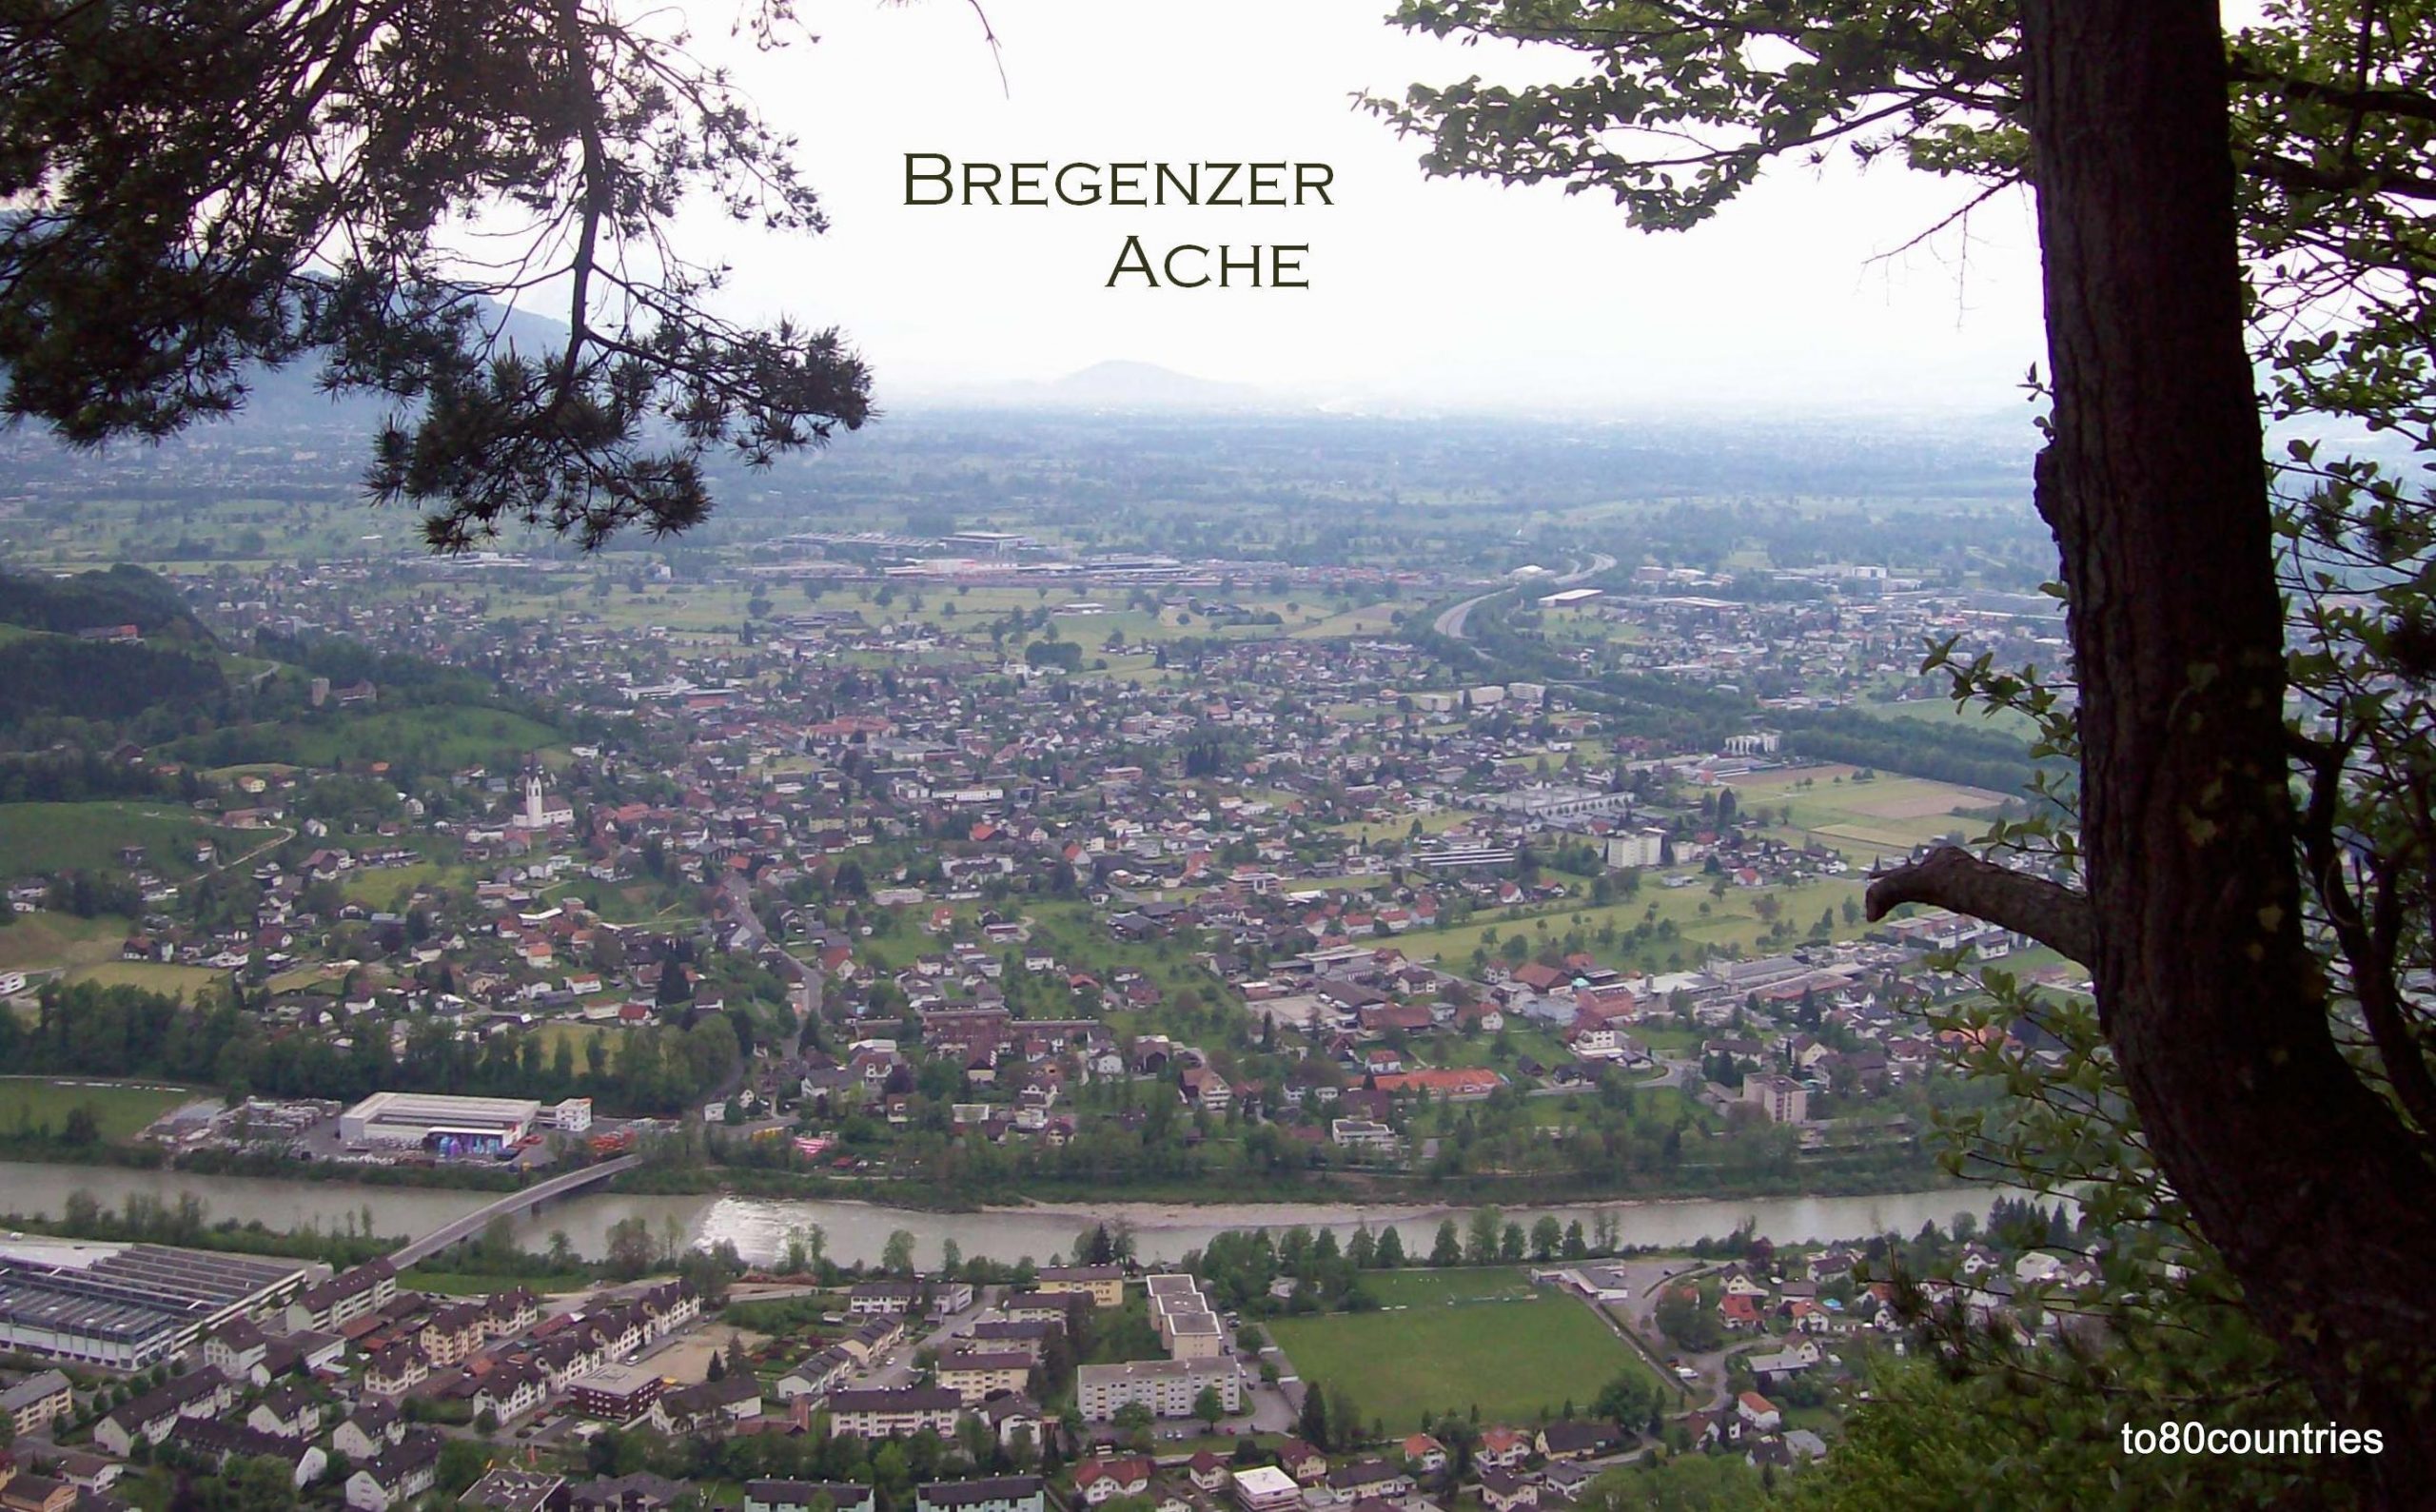 Blick auf die Bregenzer Ache